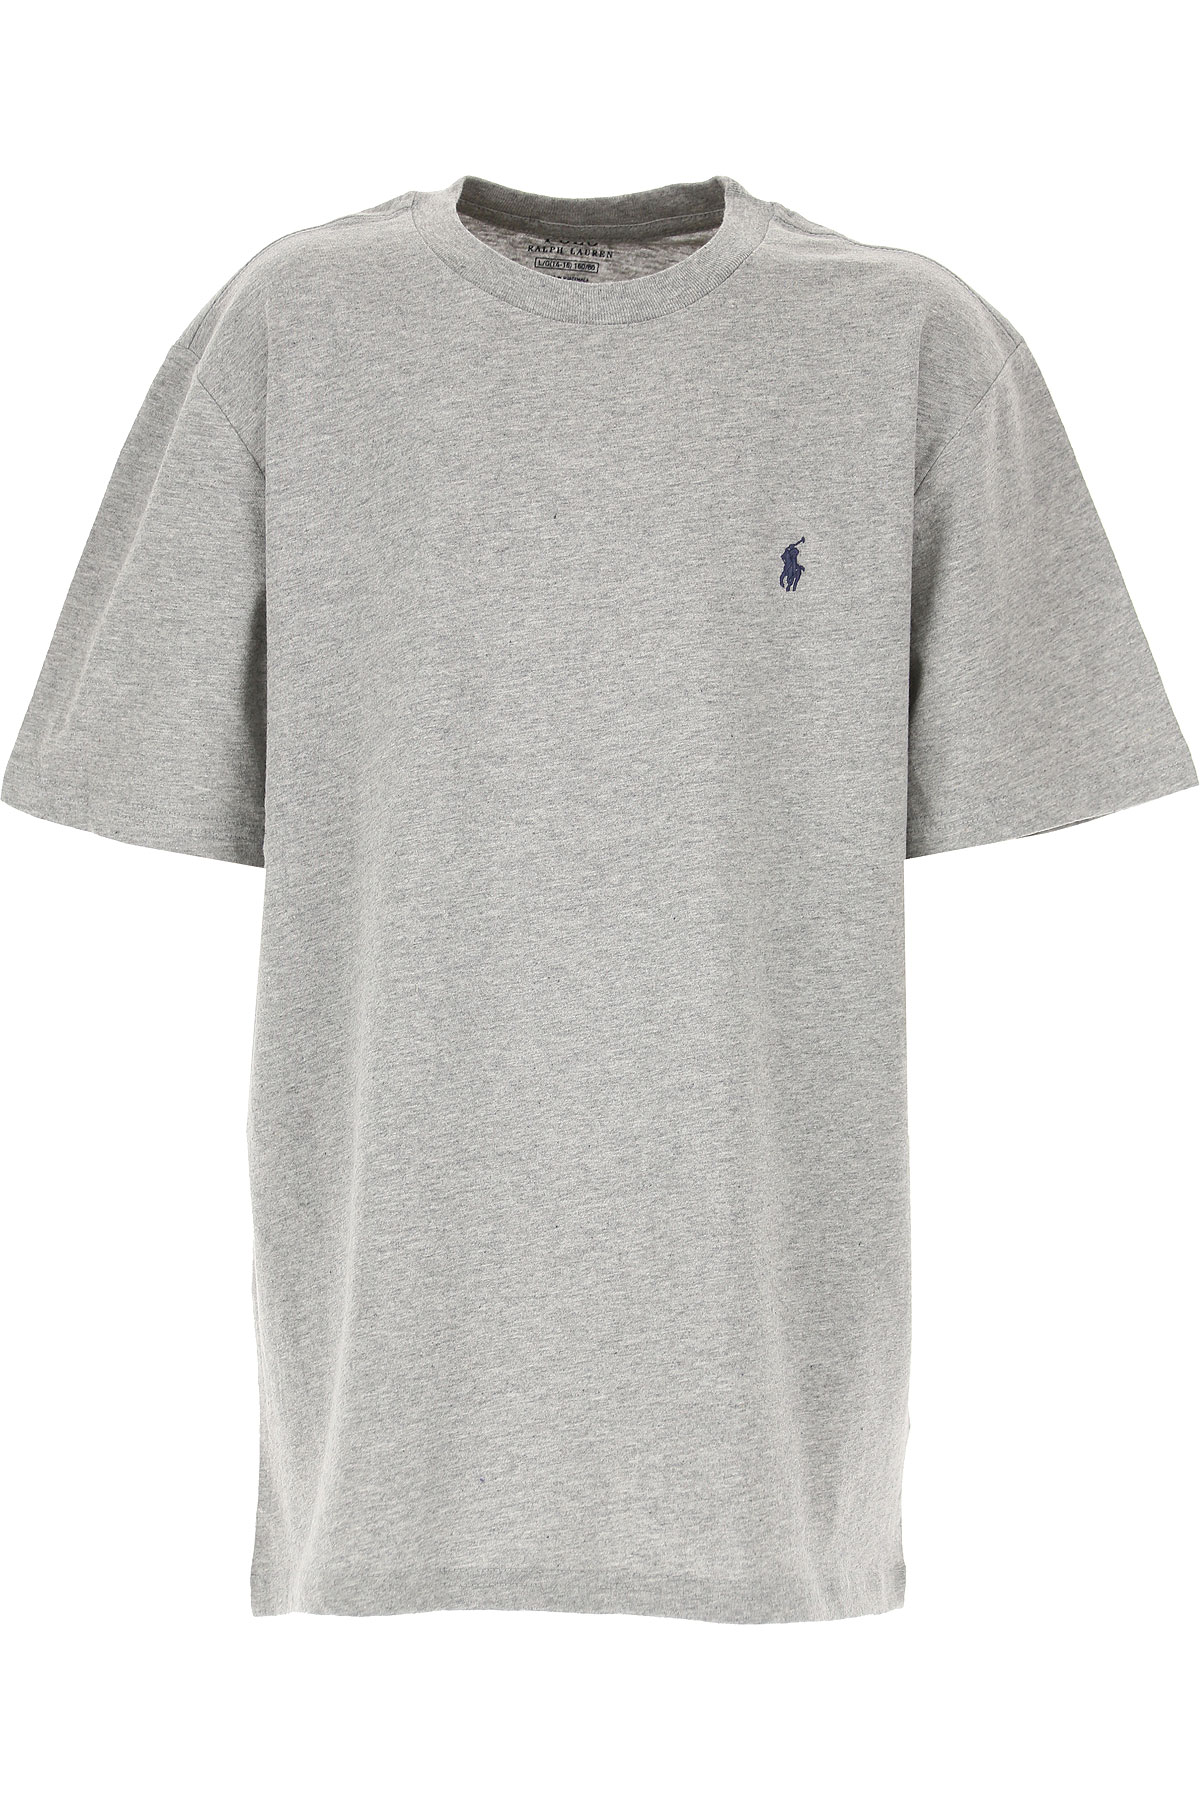 Ralph Lauren Kinder T-Shirt für Jungen, Grau, Baumwolle, 2017, S XL